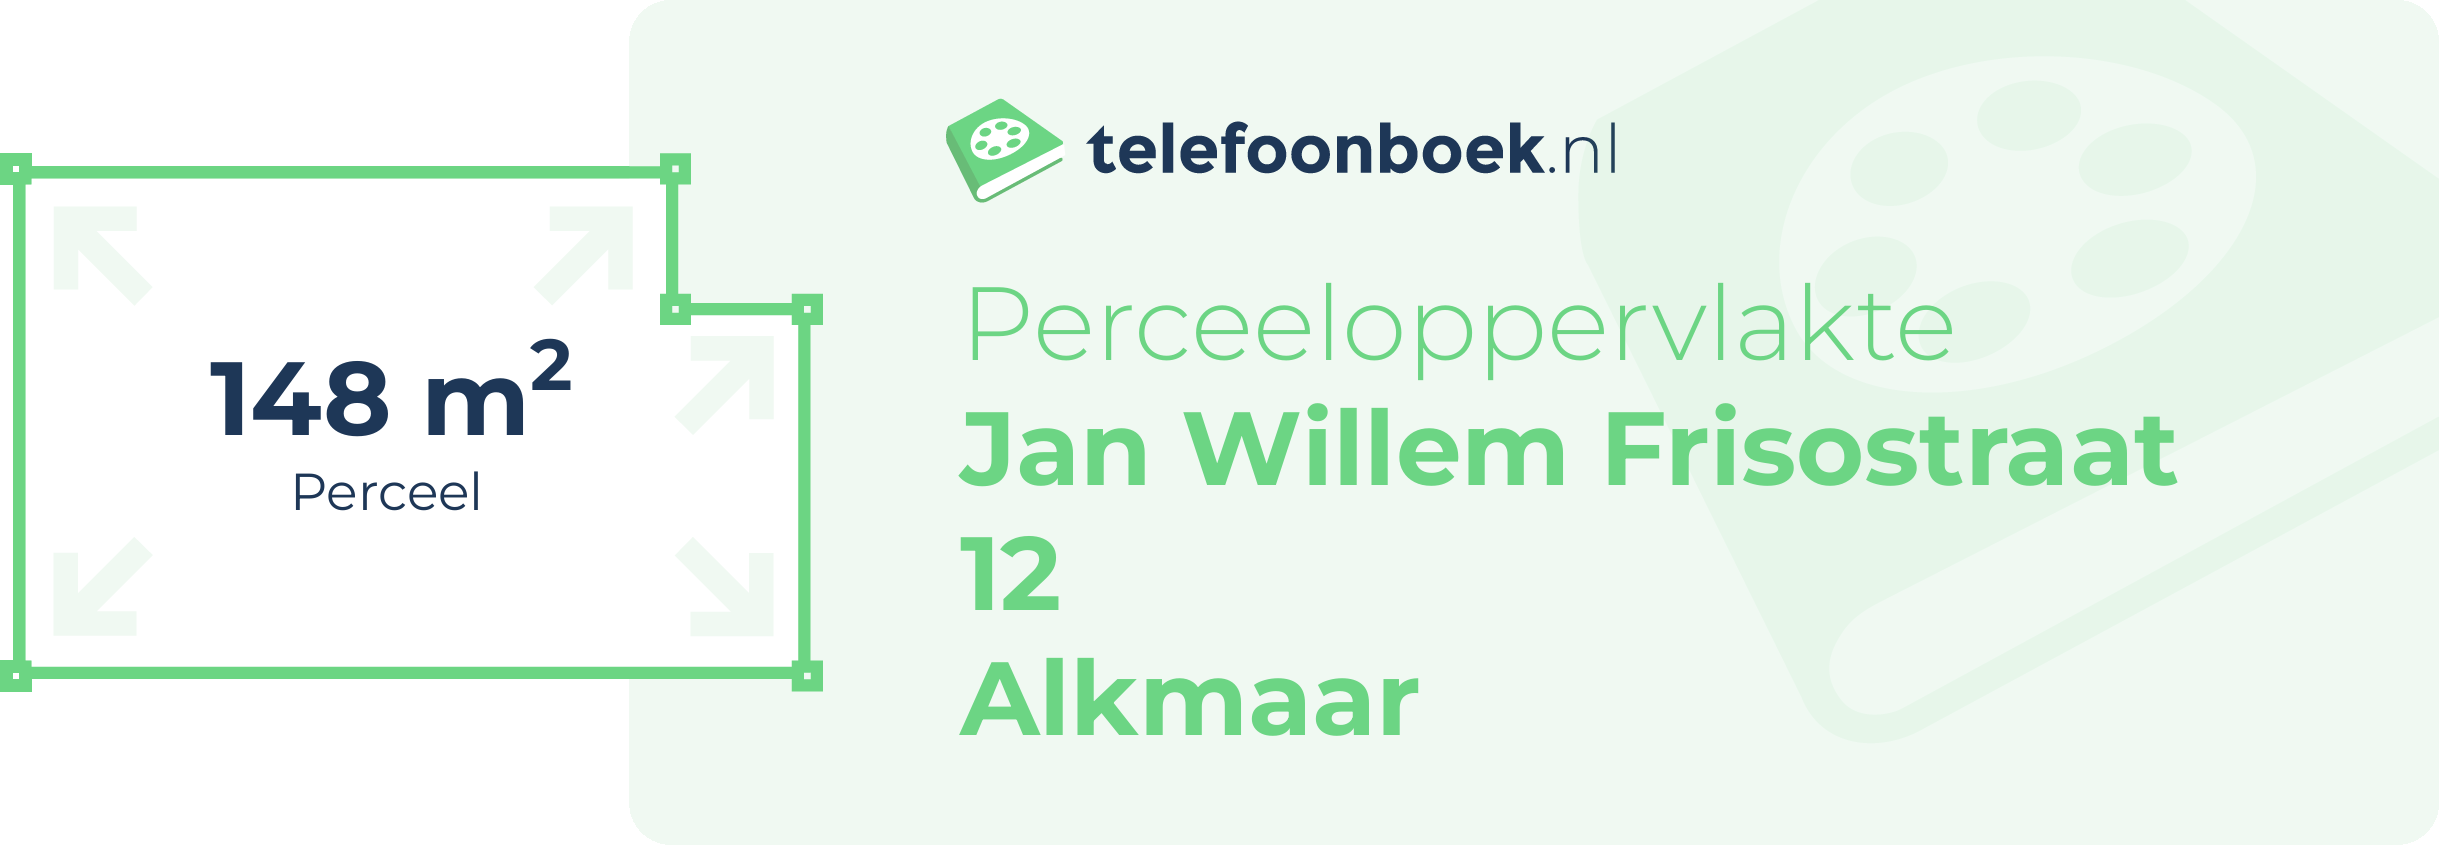 Perceeloppervlakte Jan Willem Frisostraat 12 Alkmaar